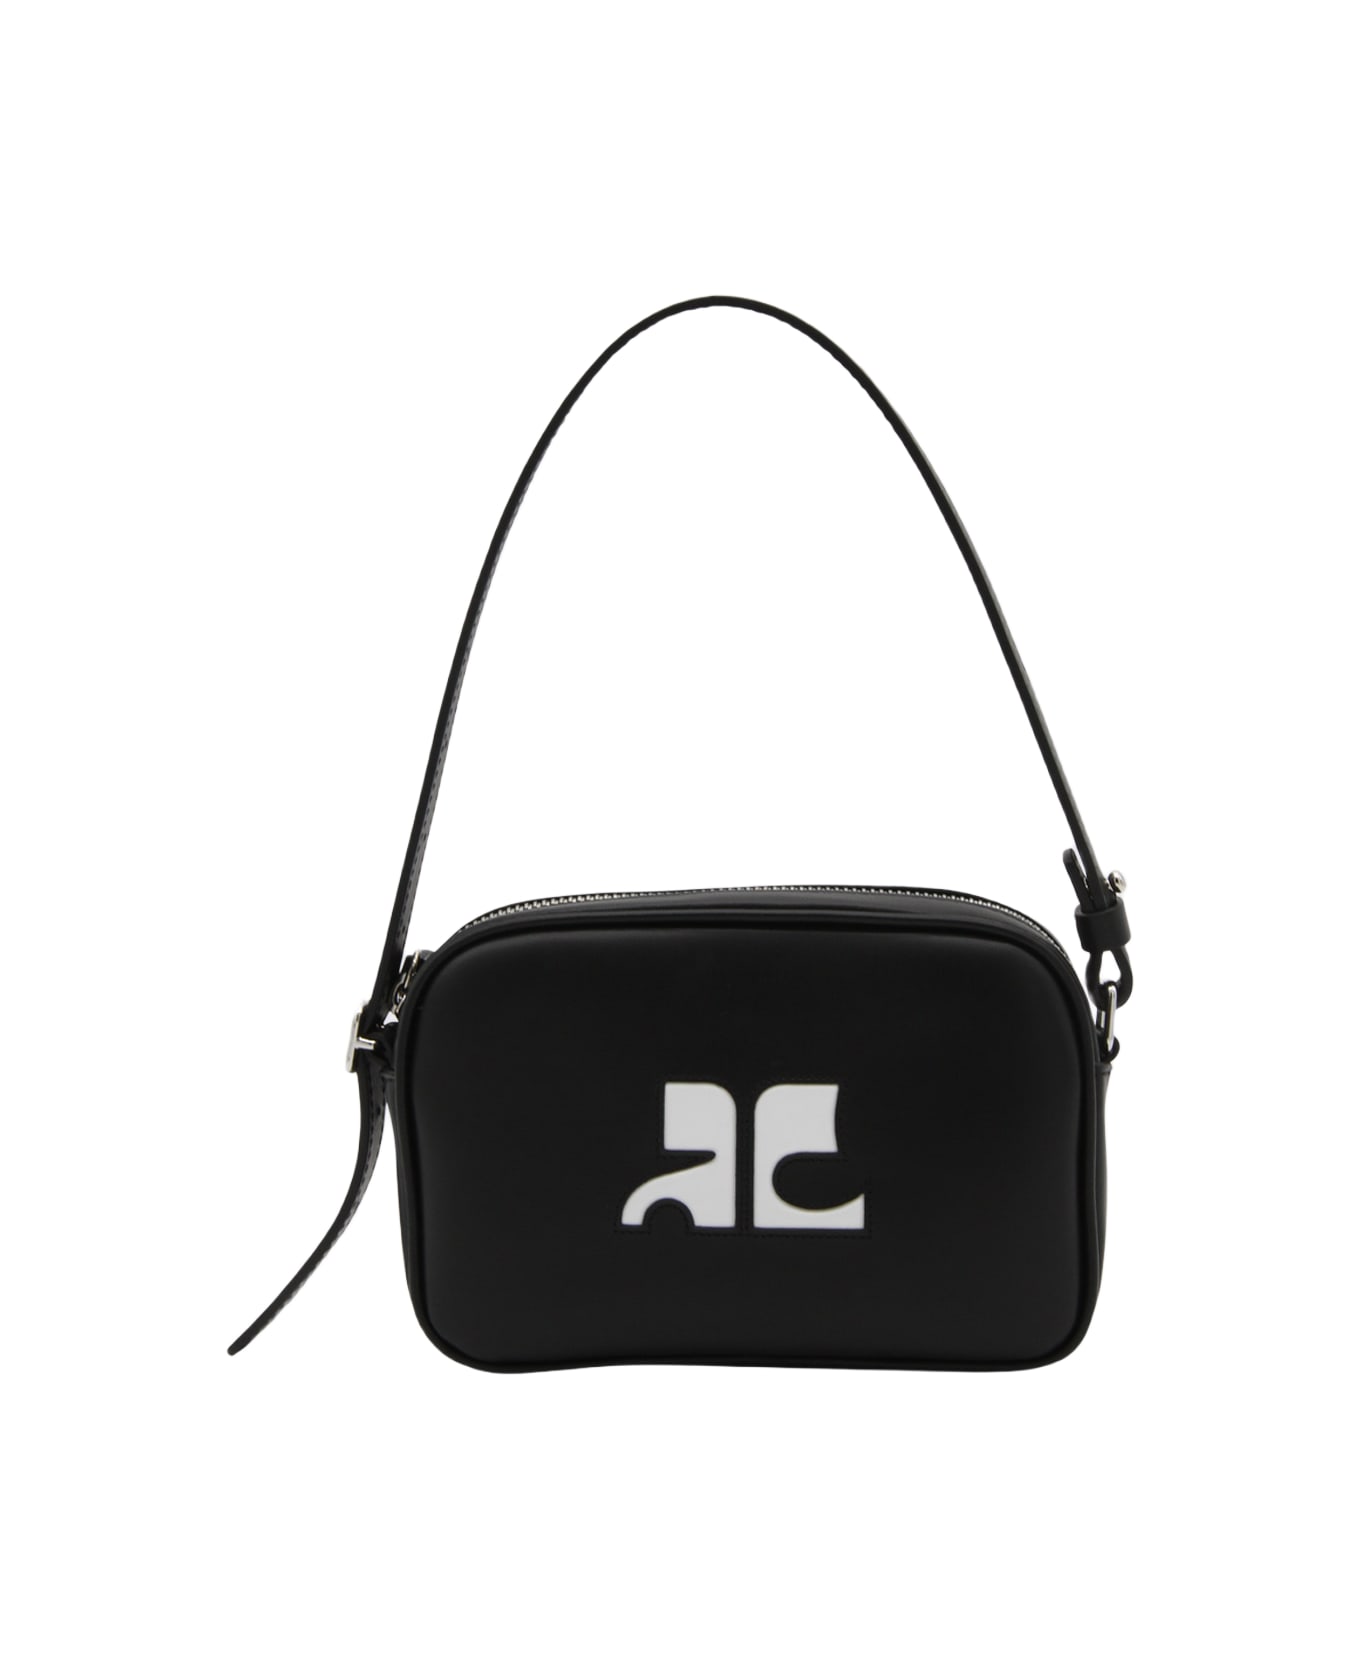 Courrèges Black Calfskin Shoulder Bag - Black ショルダーバッグ